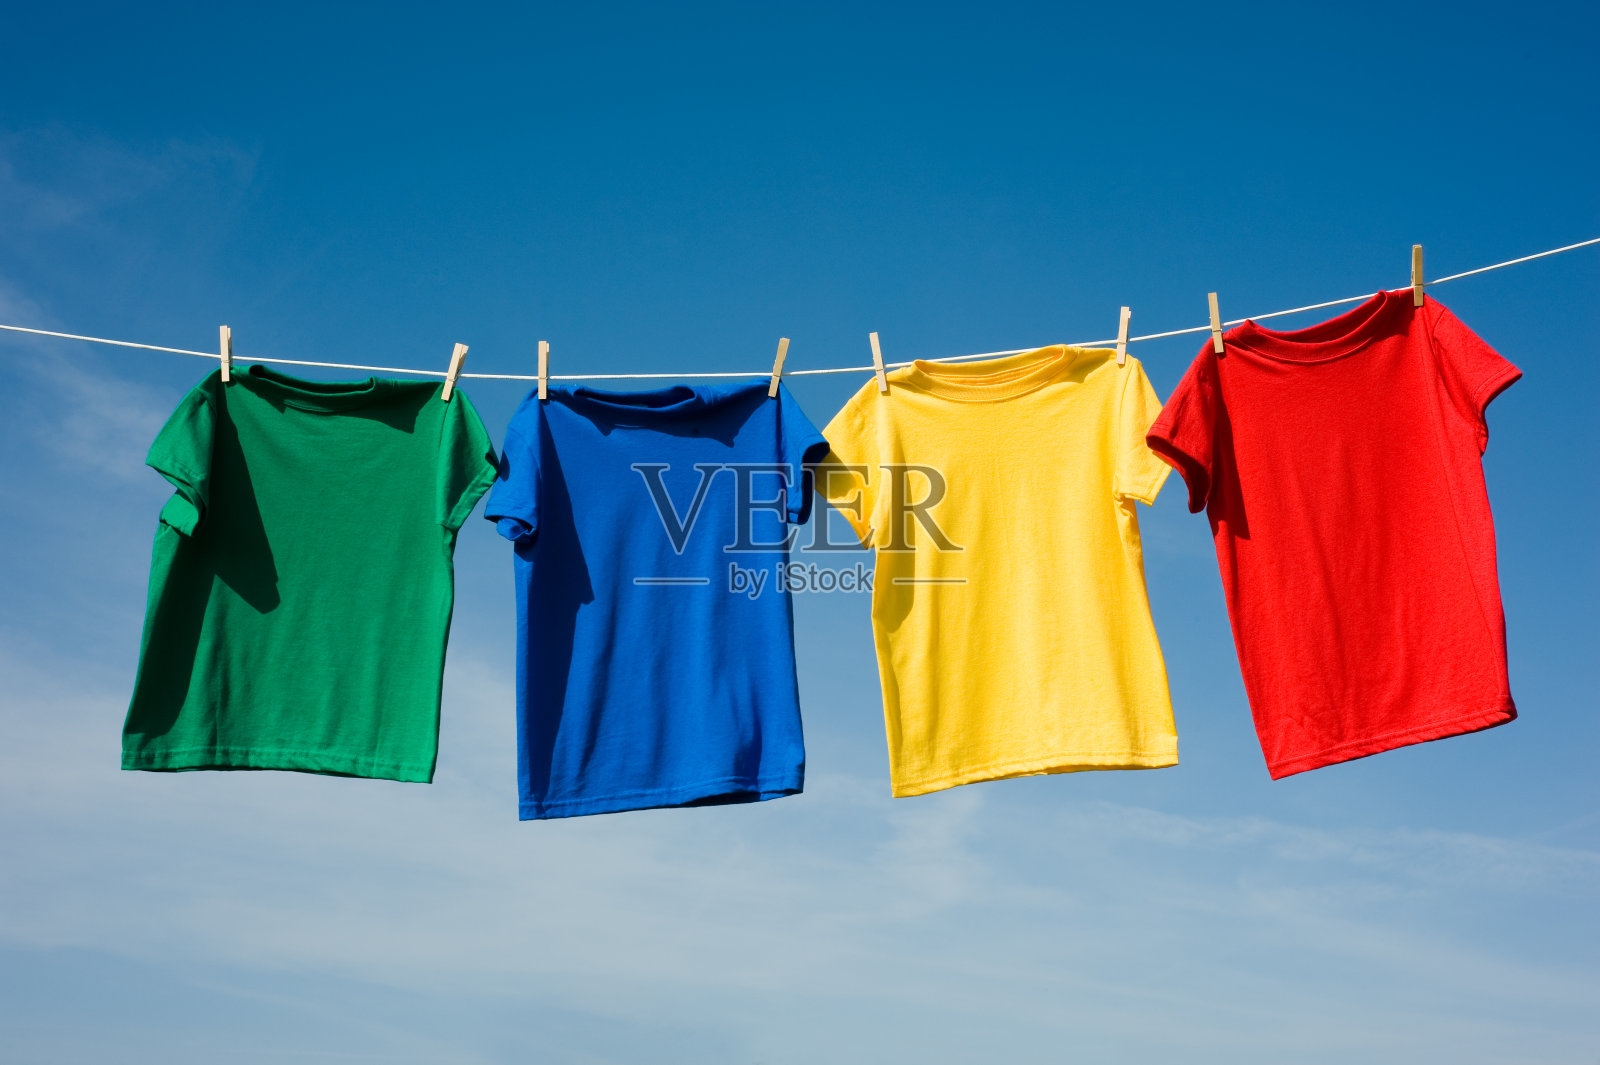 四件原色衬衫挂在晾衣绳上照片摄影图片